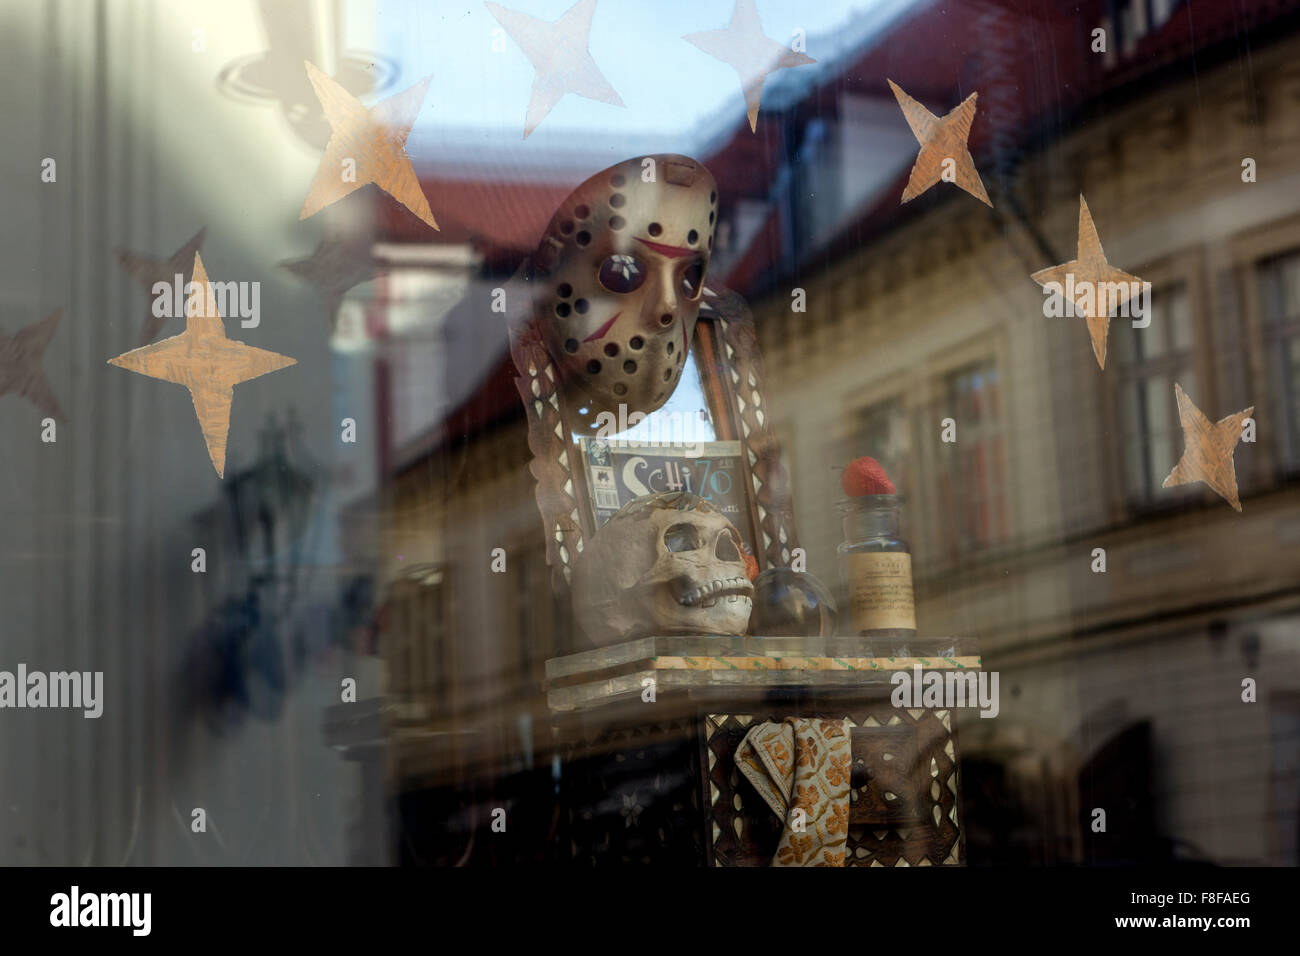 Ein Schaufenster im Chapeau Rouge Club, Old Town, Prag, Tschechische Republik Stockfoto